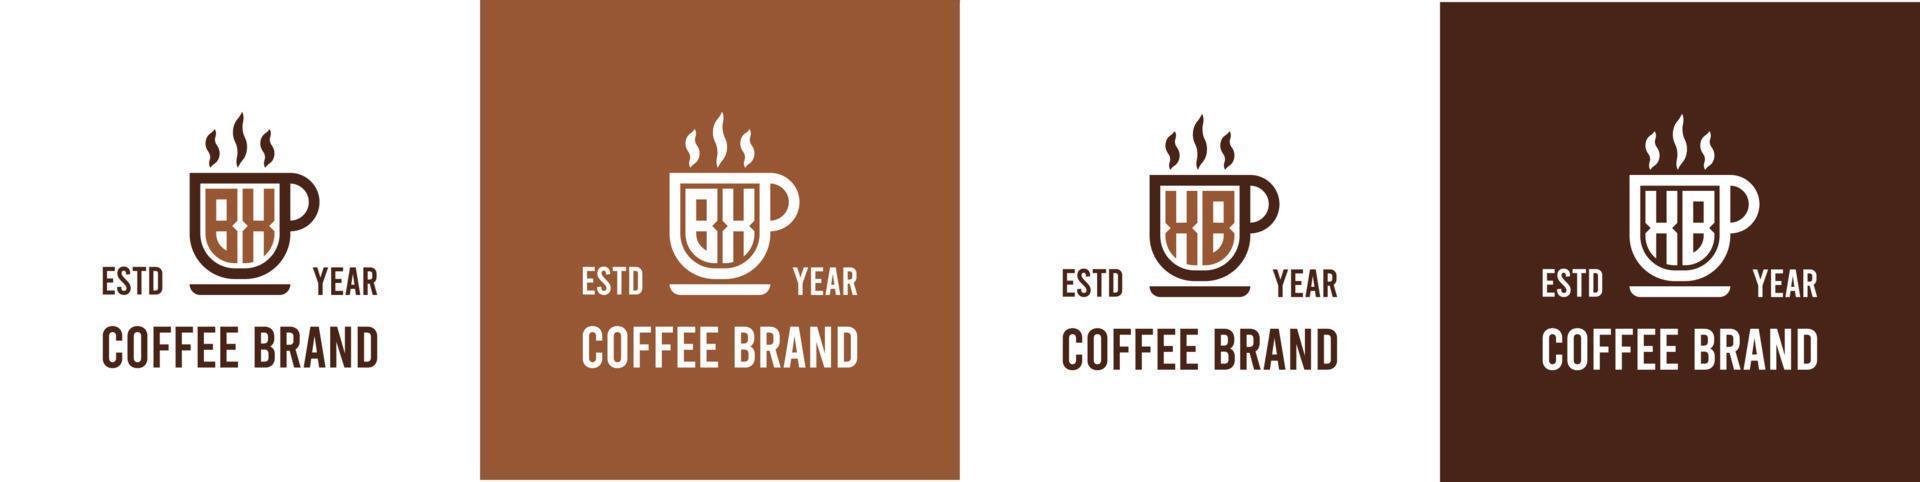 carta bx e xb café logotipo, adequado para qualquer o negócio relacionado para café, chá, ou de outros com bx ou xb iniciais. vetor